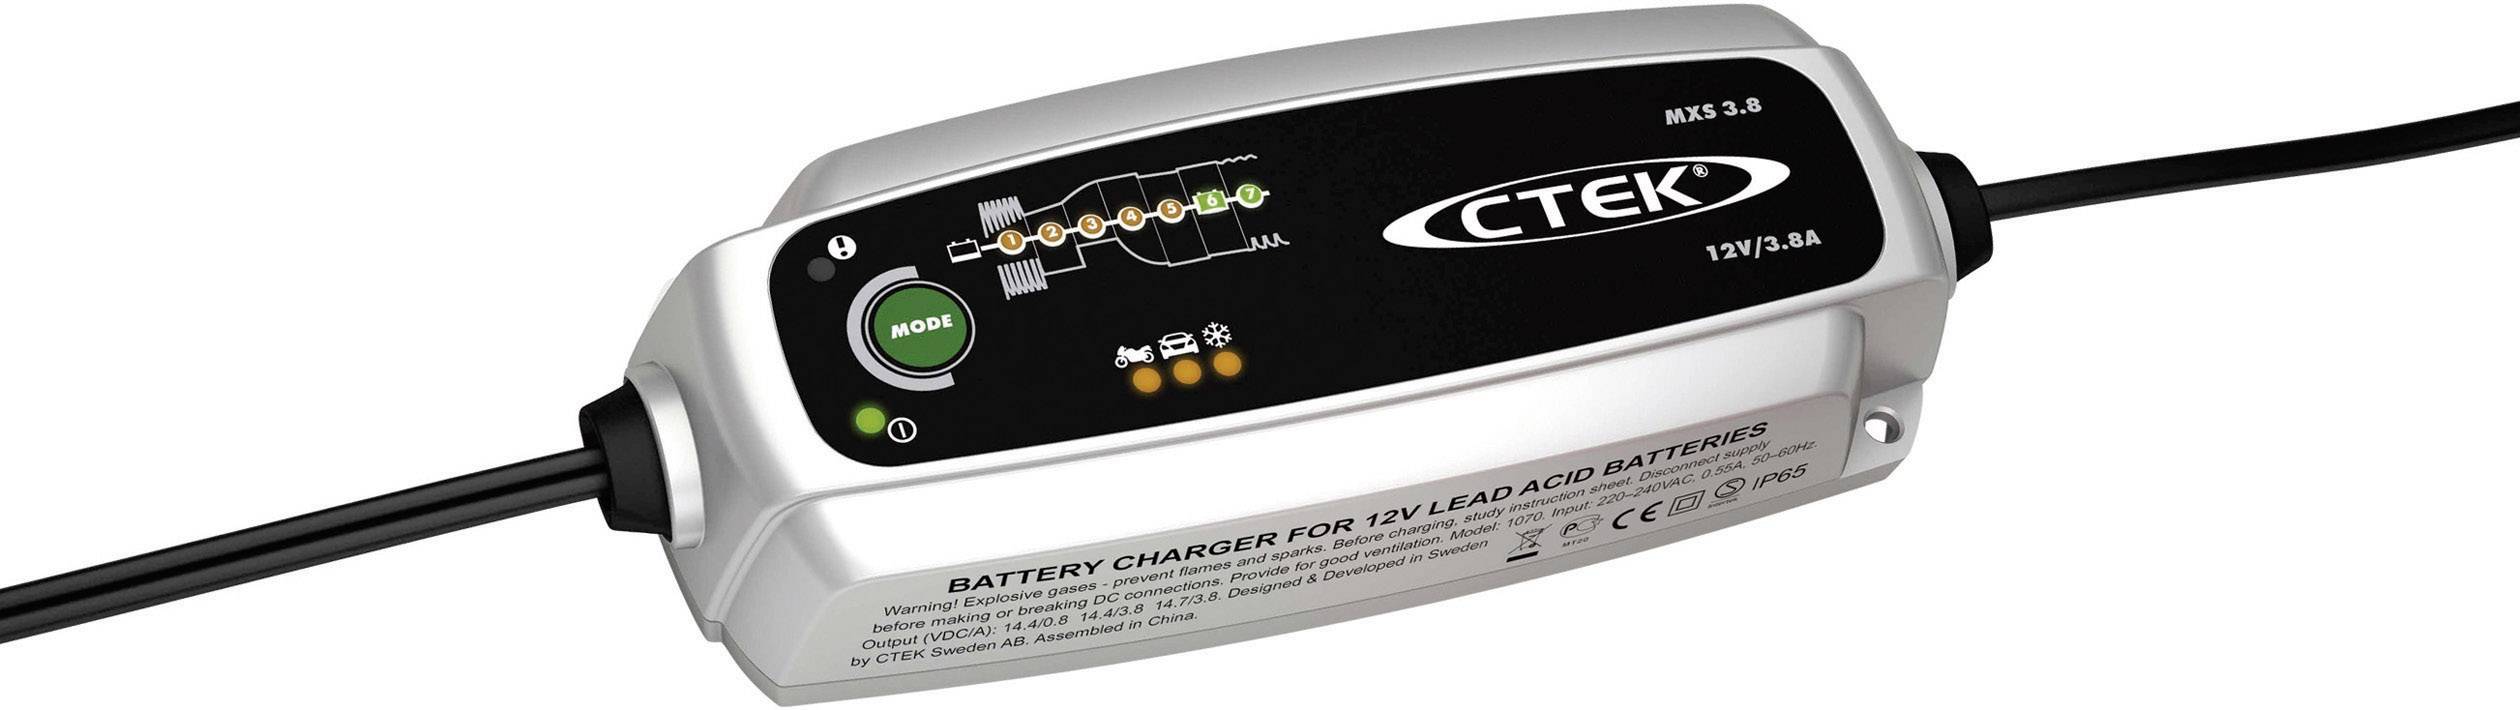 Chargeur automatique CTEK 56-707 12 V - Conrad Electronic France